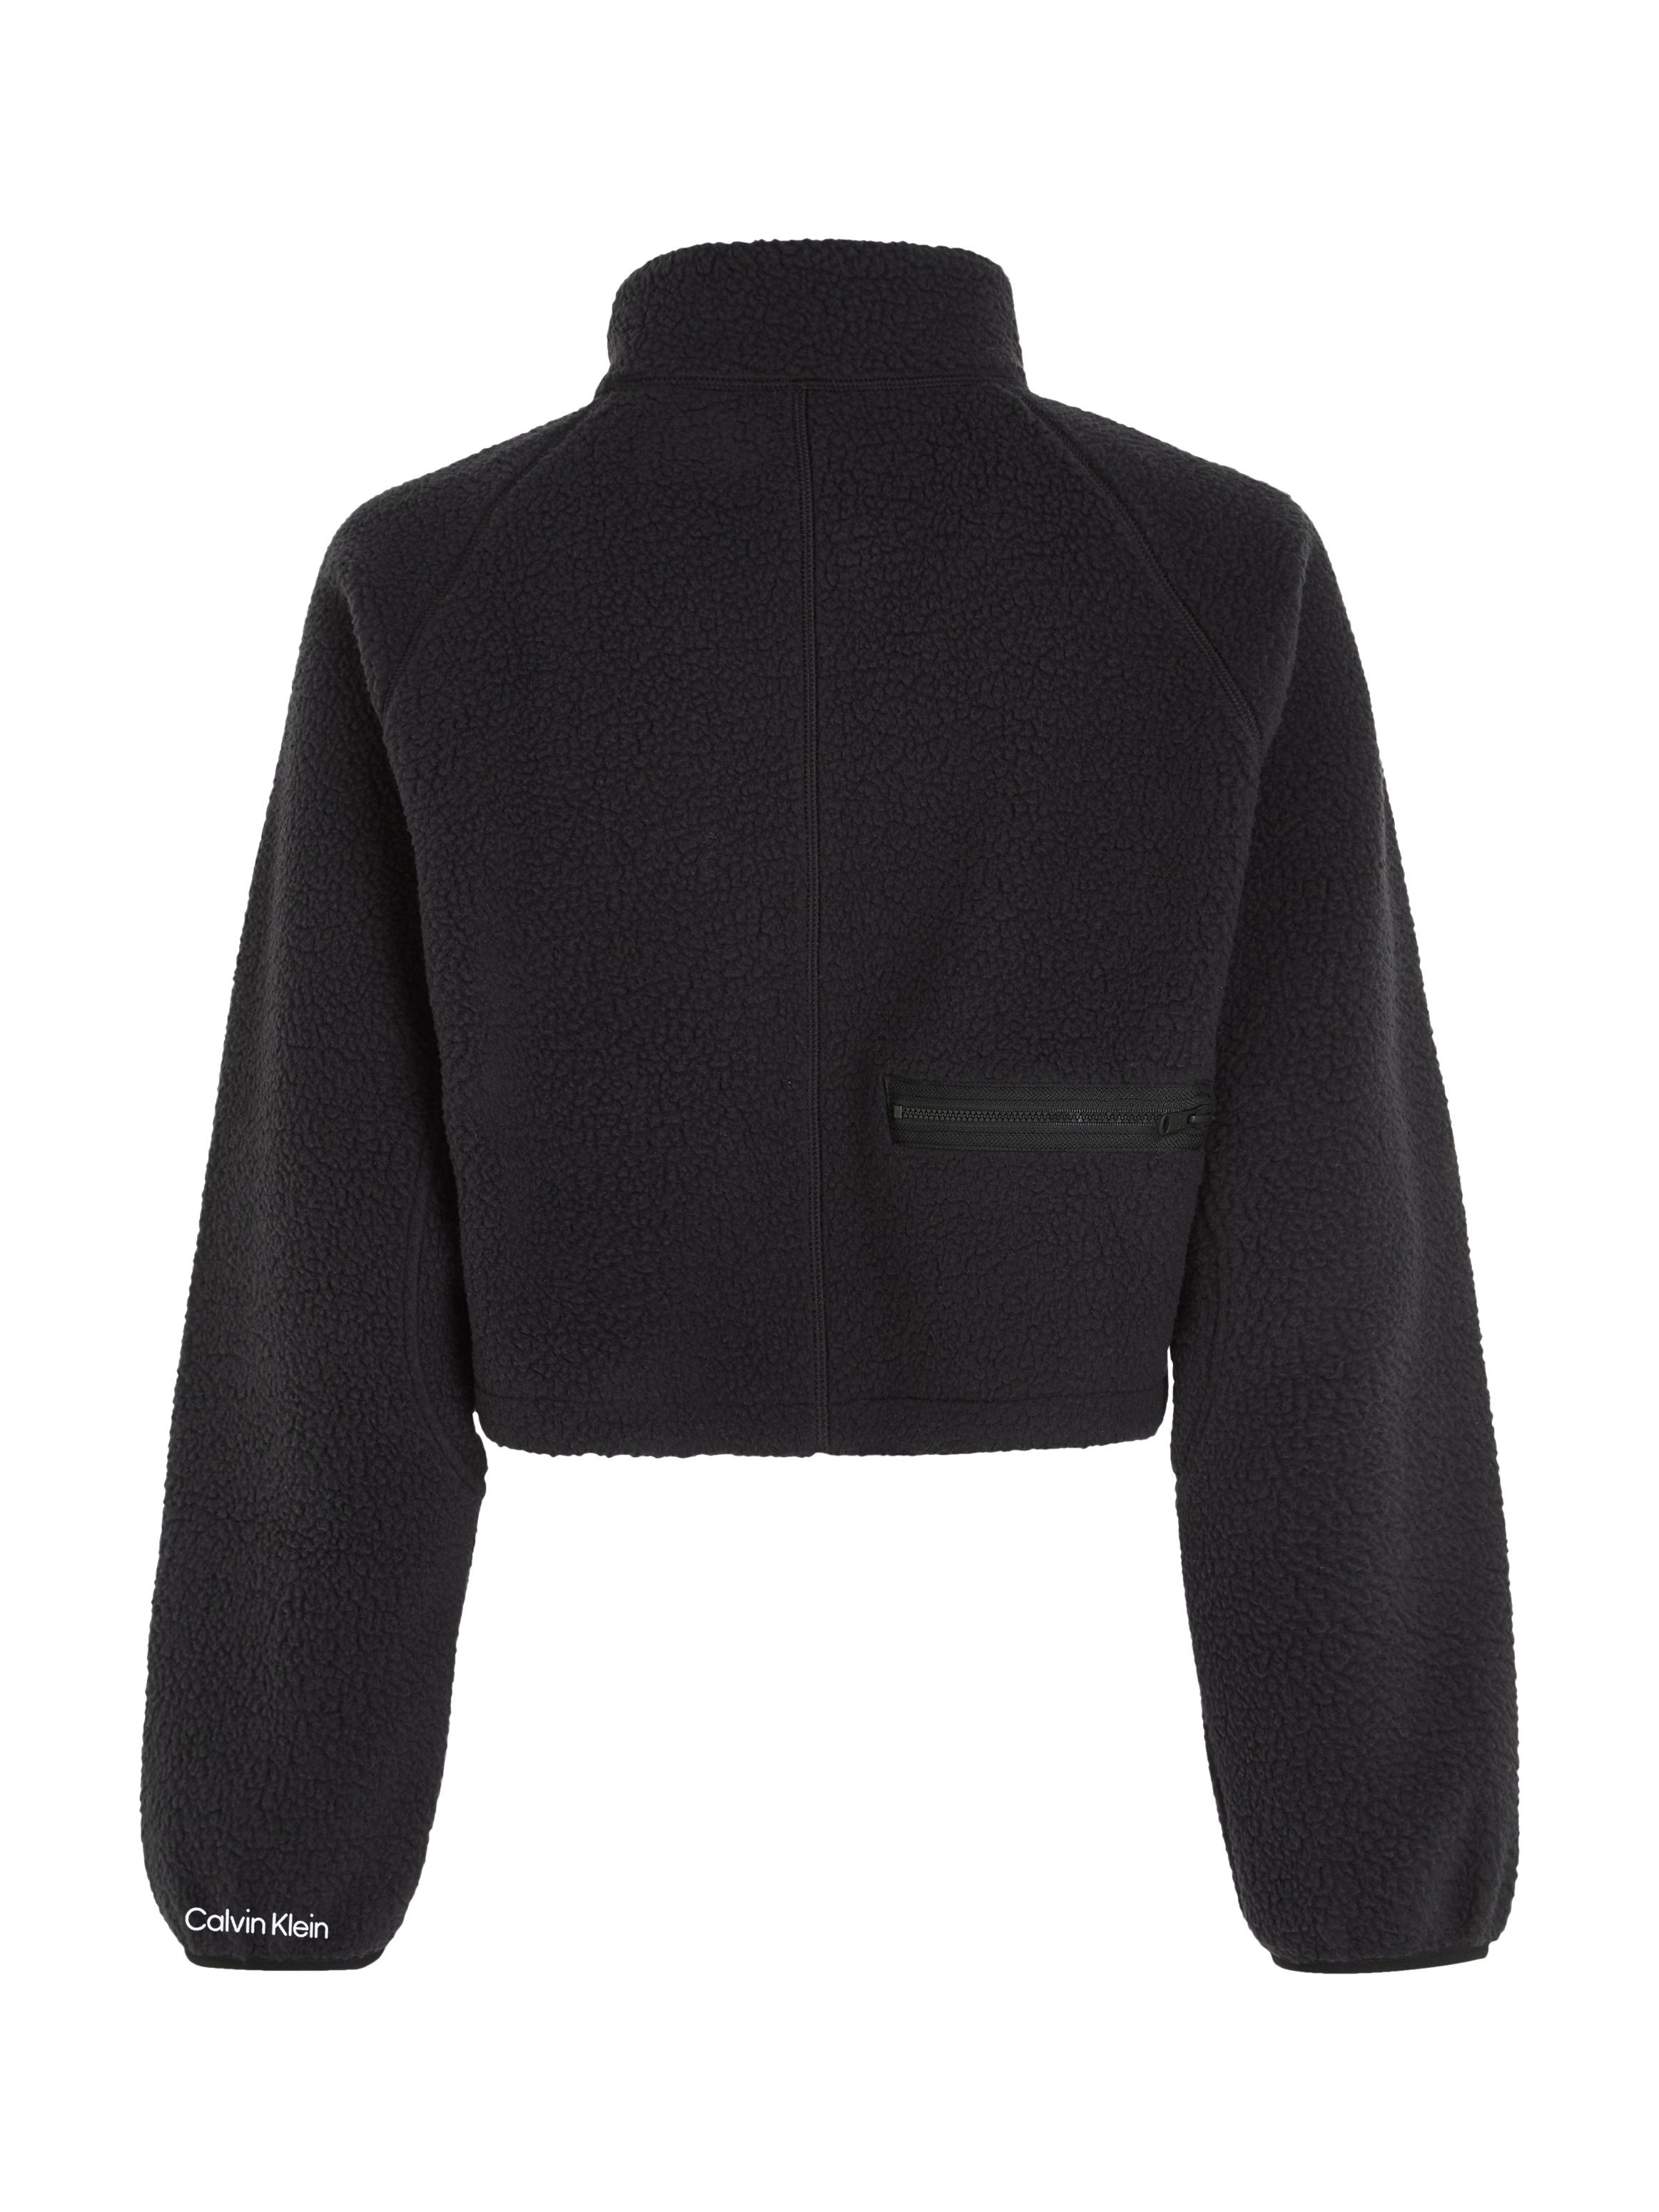 Calvin Klein Sport Sherpa Stehkragenpullover Pullover - schwarz HYBRID